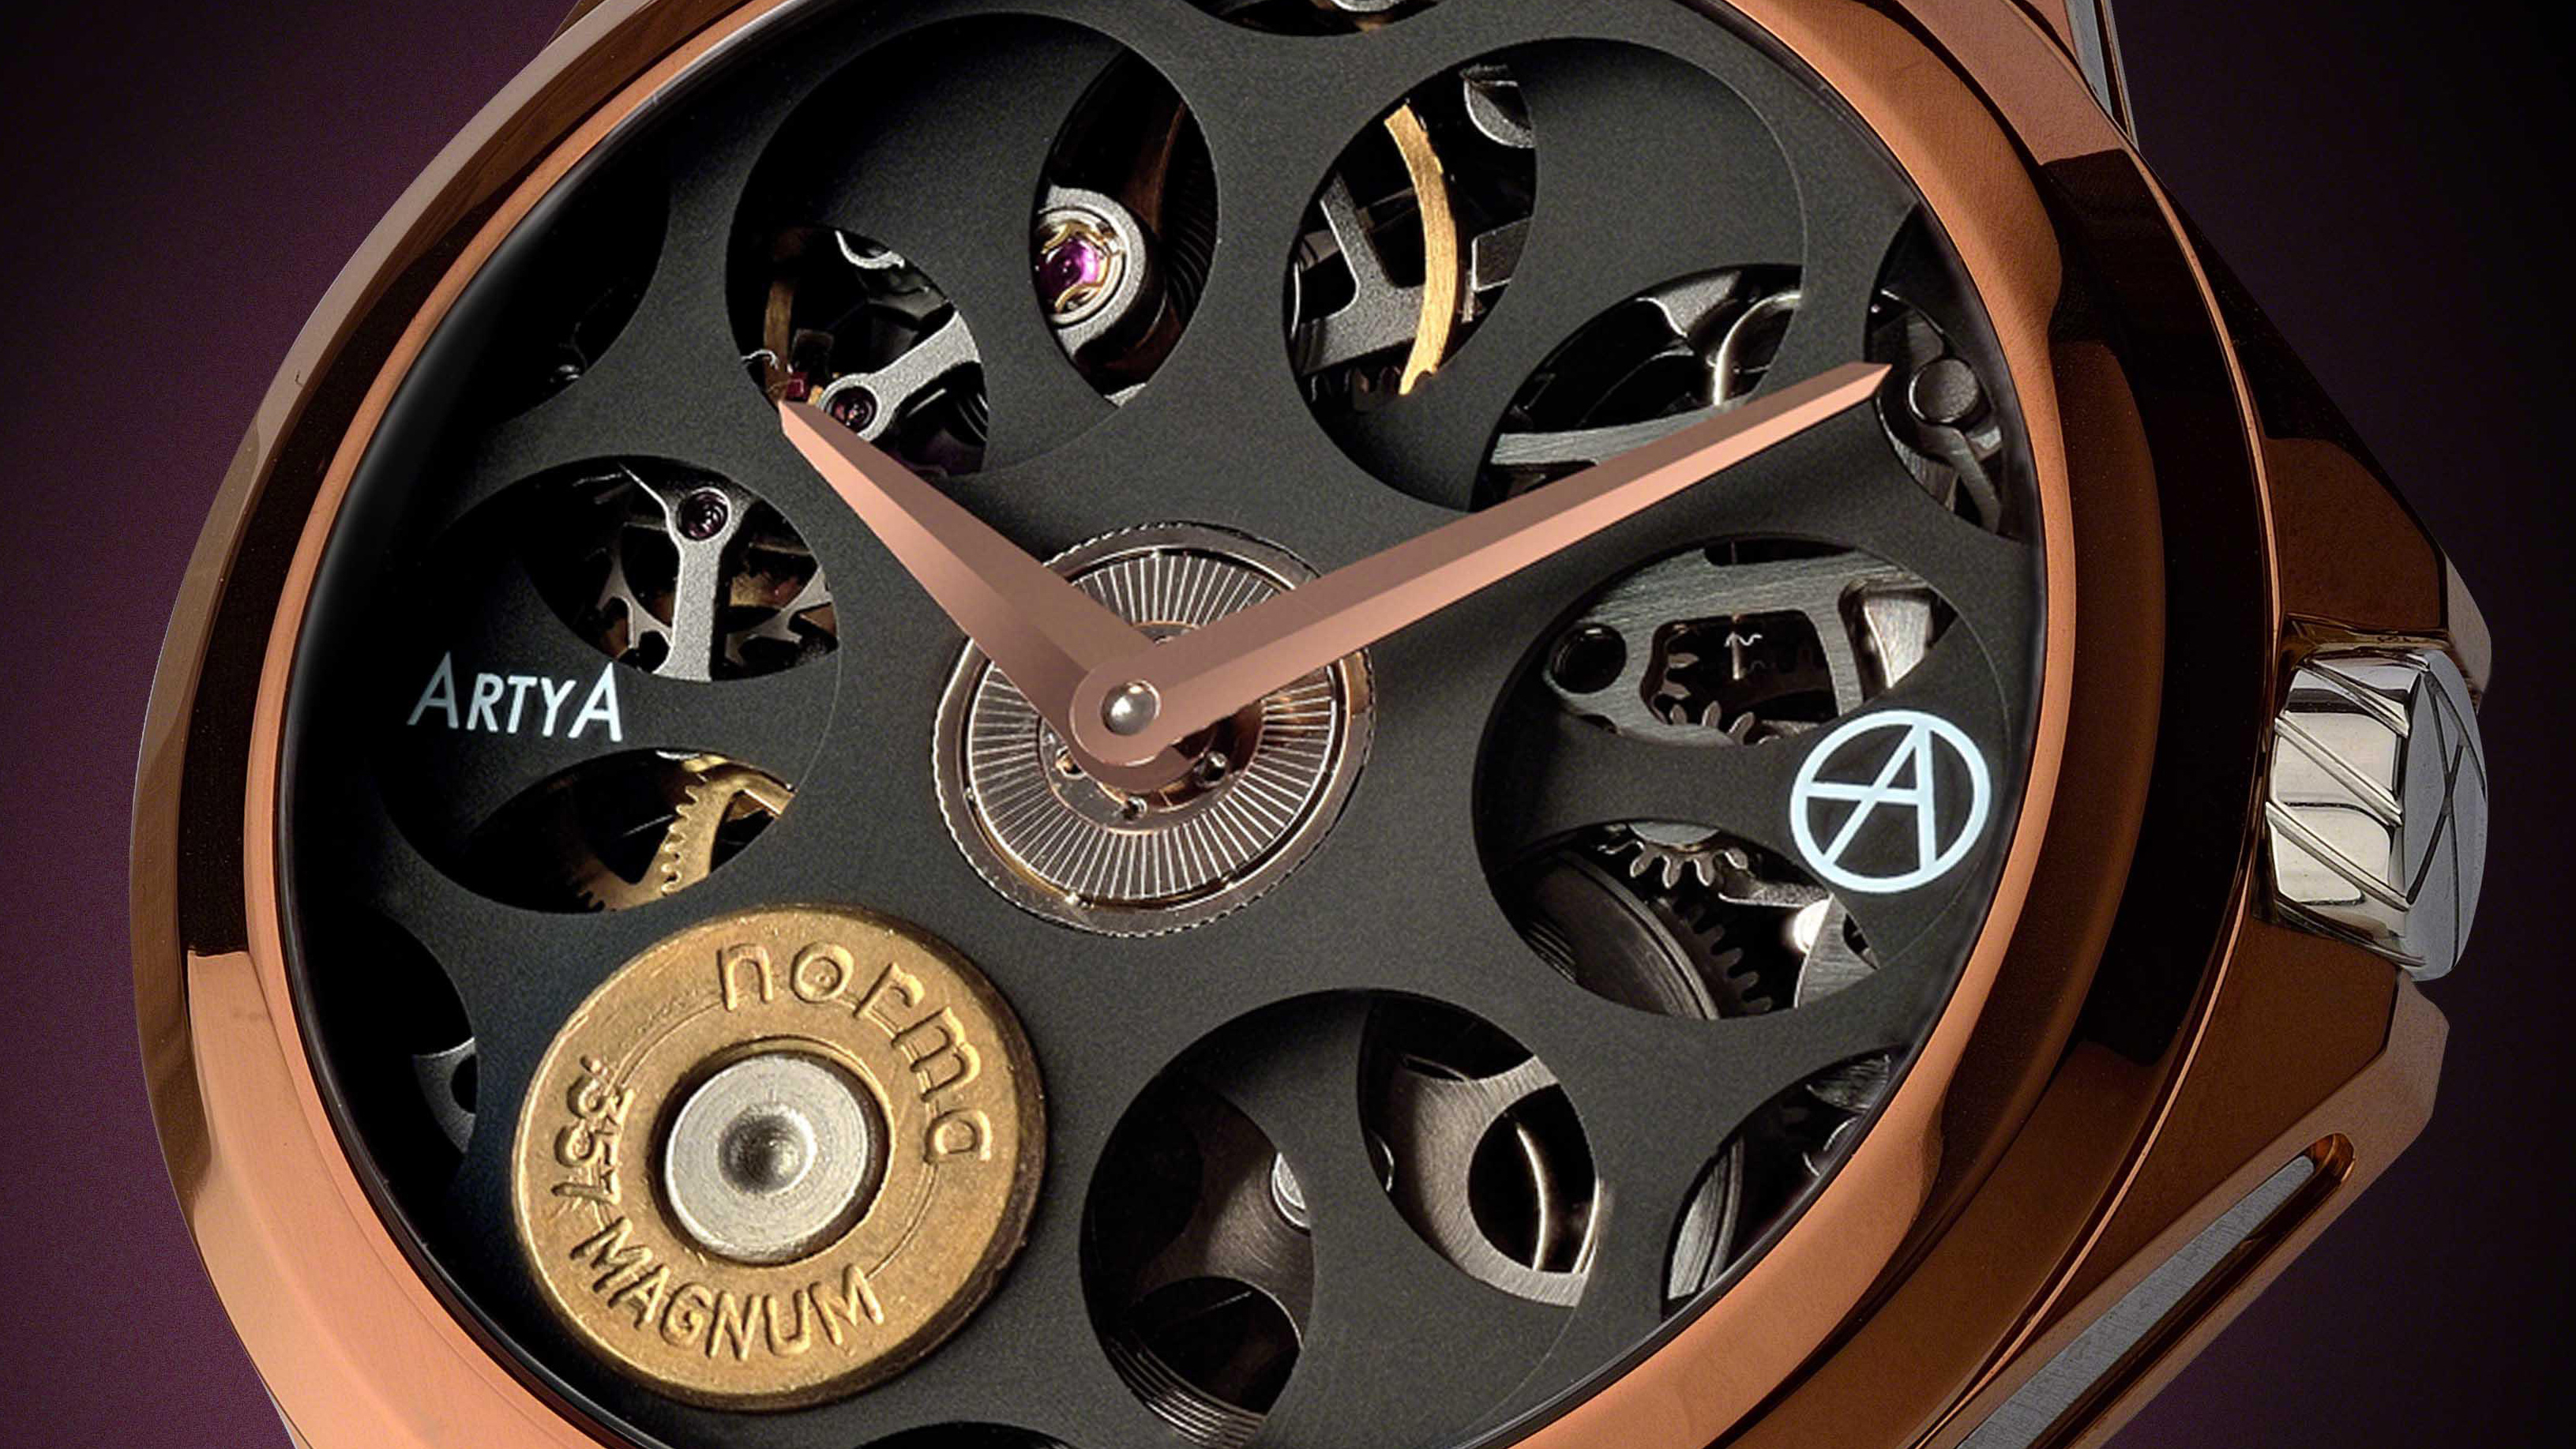 映画 ゴースト イン ザ シェル でビートたけしが着用した腕時計とは 株式会社グローバルブランディングのプレスリリース